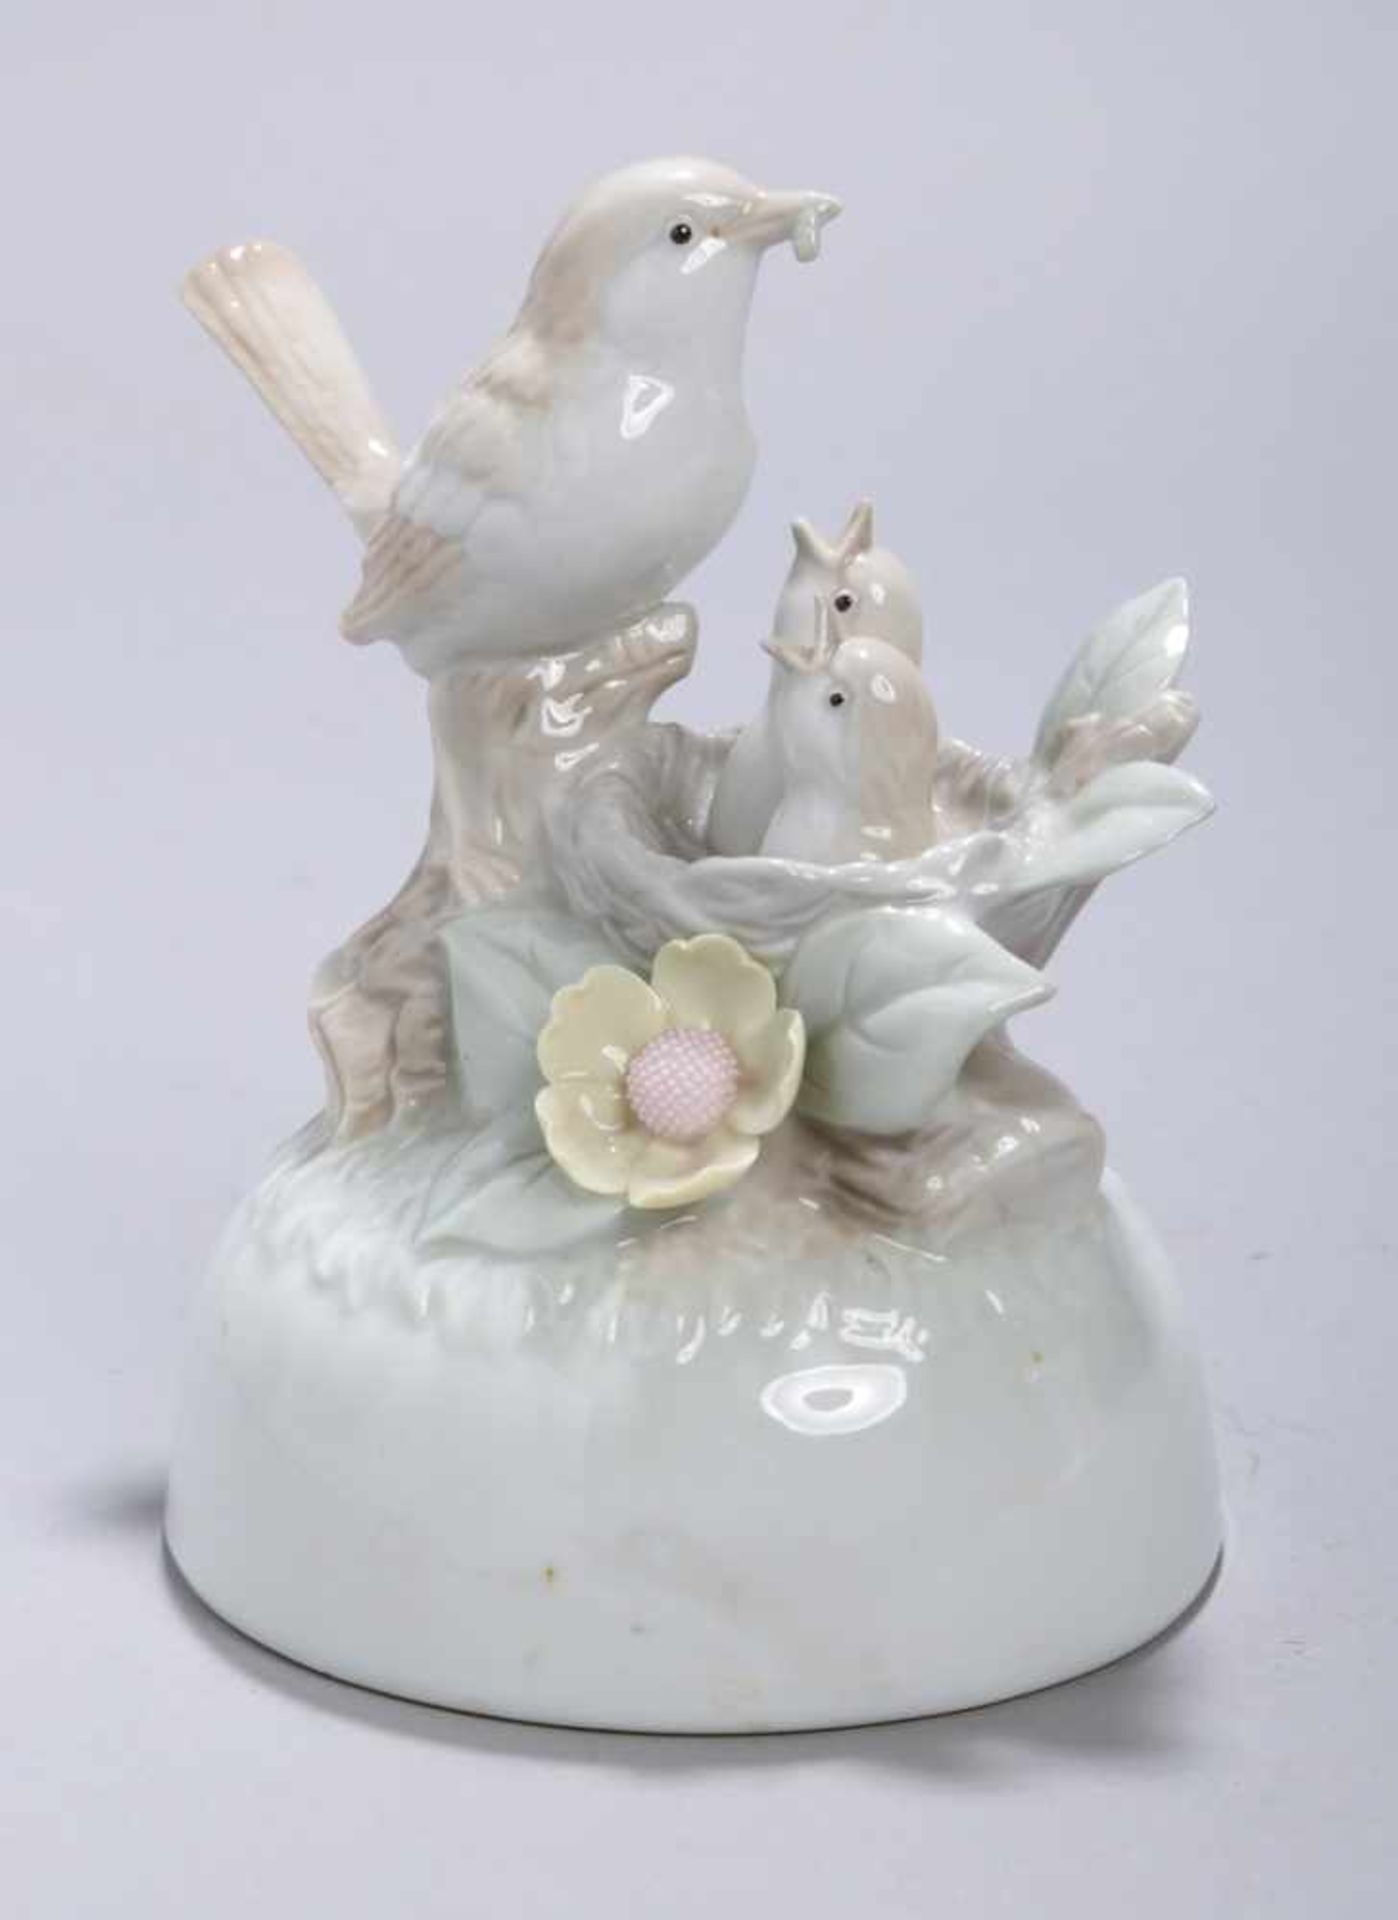 Porzellan-Tierplastik, "Vogel mit Nest", ungemarkt, 20. Jh., auf gewölbtem,naturbewachsenem